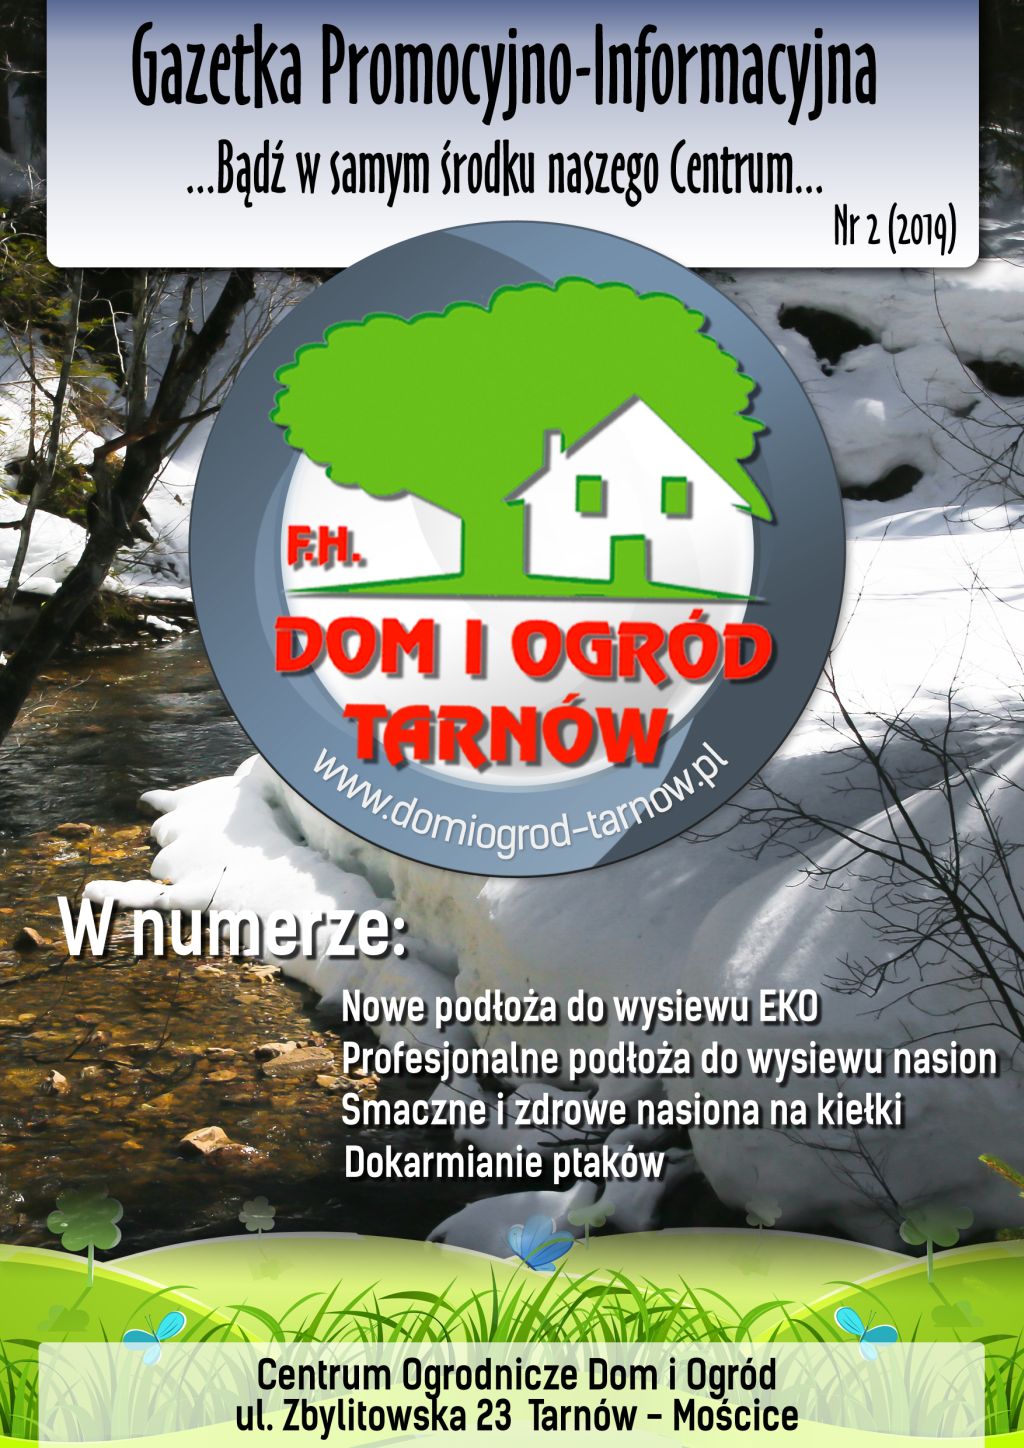 Gazetka Promocyjno-Informacyjna - 02/2019